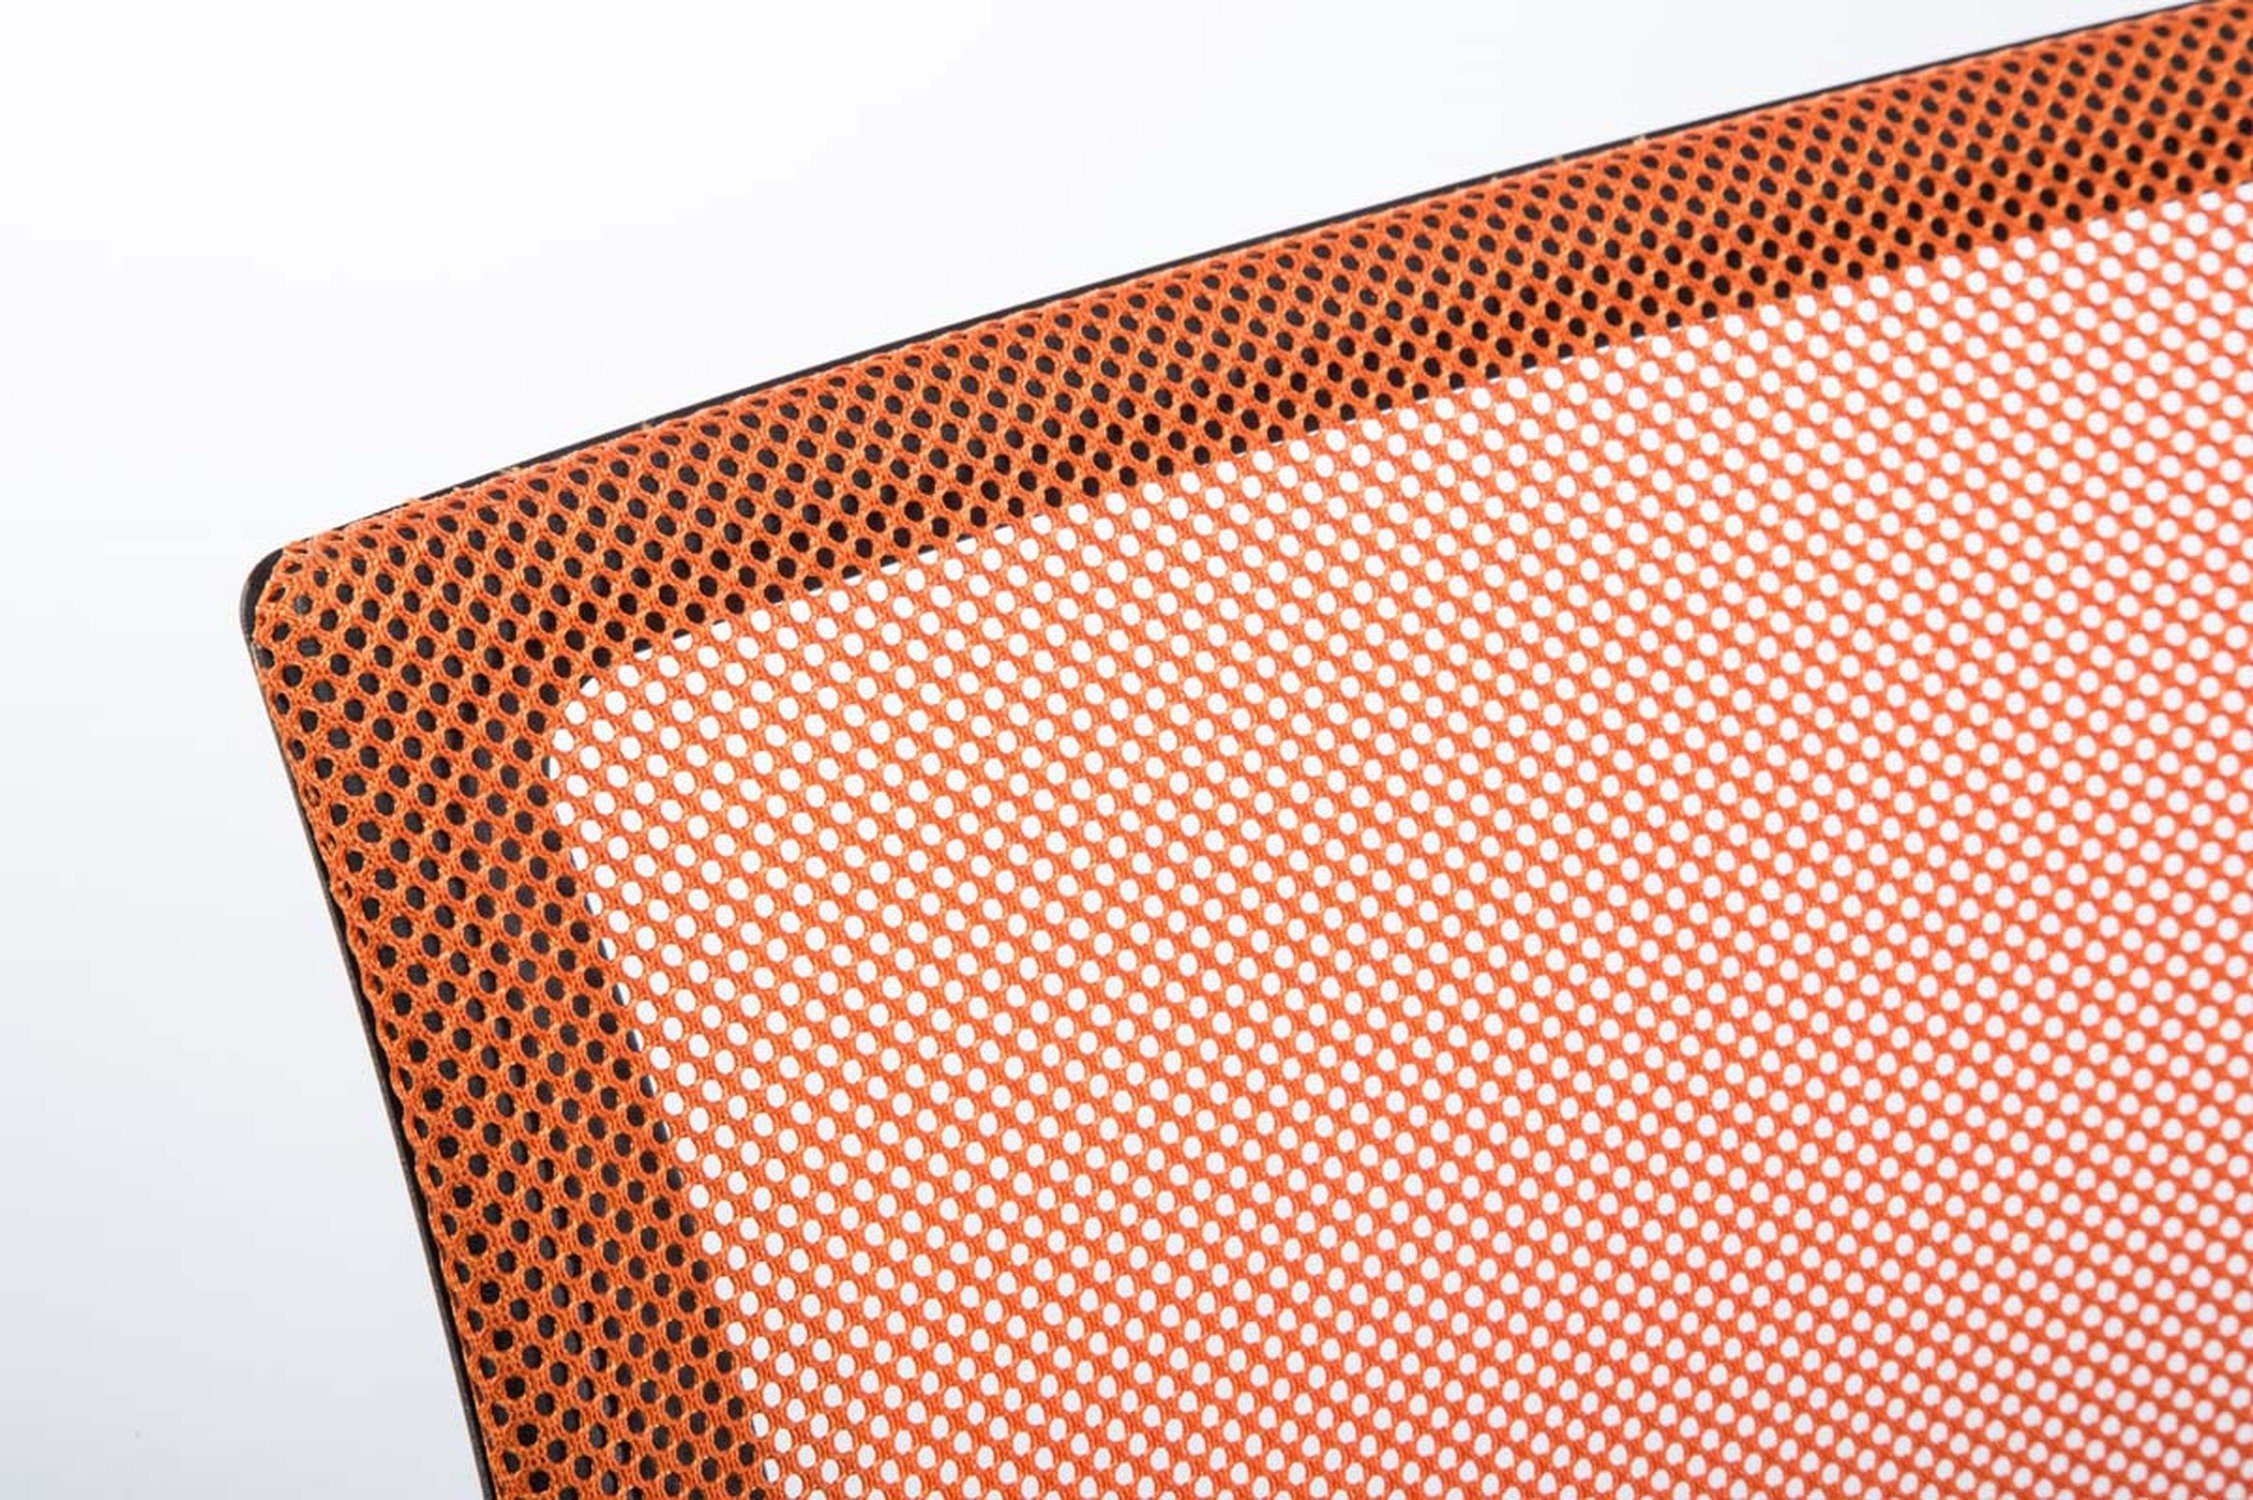 TPFLiving Bürostuhl Genf mit bequemer - drehbar orange Microfaser Drehstuhl, Kunststoff höhenverstellbar Rückenlehne schwarz XXL), Sitzfläche: 360° Chefsessel, Gestell: - Bürostuhl (Schreibtischstuhl, und